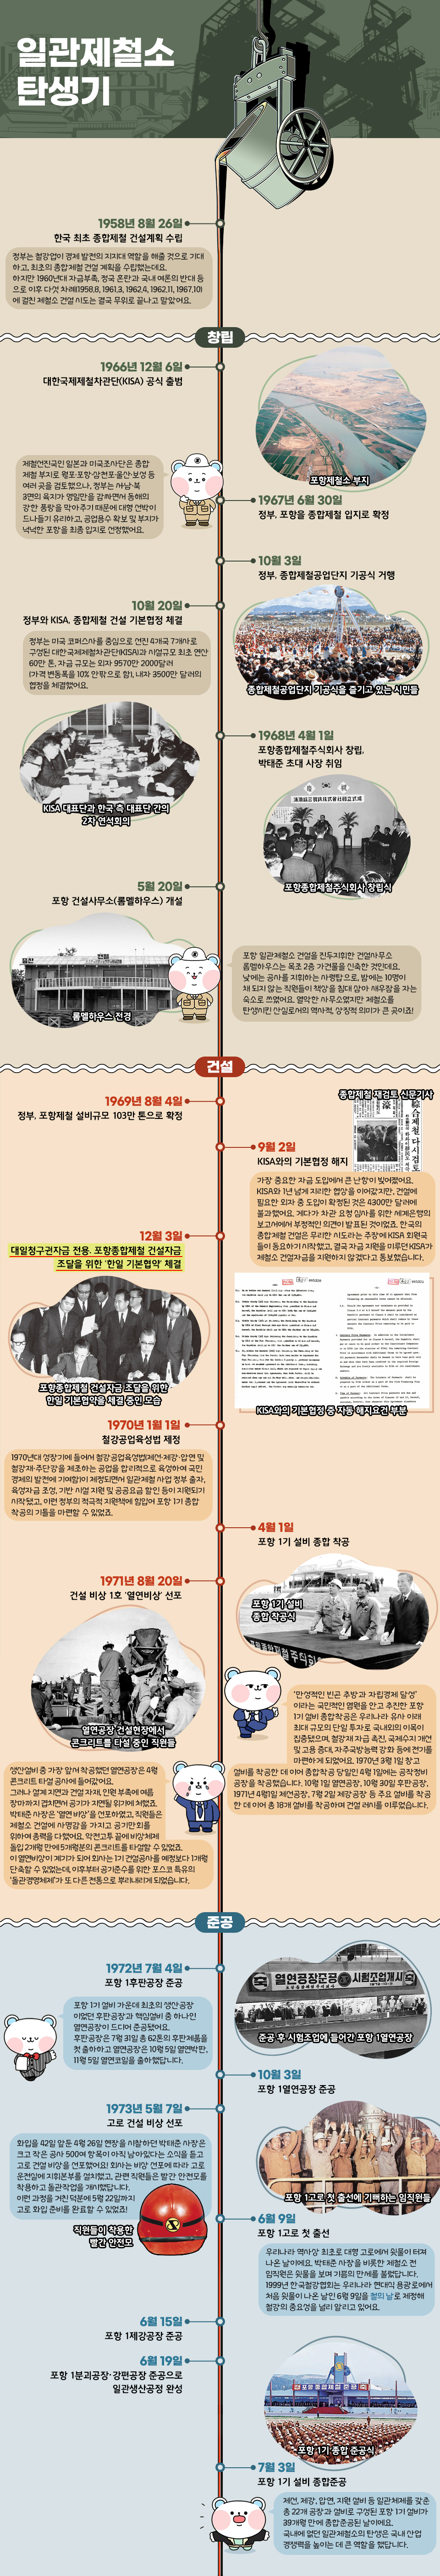 일관제철소 탄생기를 보여주는 인포그래픽이다. 1958년 8월 26일, 한국 최초 종합제철 건설계획 수립. 정부는 철강업이 경제 발전의 지지대 역할을 해줄 것으로 기대하고, 최초의 종합제철 건설 계획을 수립했는데요. 하지만 1960년대 자금부족, 정국 혼란과 국내 여론의 반대 등으로 이후 다섯 차례(1958.8, 1961.3, 1962.4, 1962.11, 1967.10)에 걸친 제철소 건설 시도는 결국 무의로 끝나고 말았어요. 창립 역사는 아래와 같다. 1966년 12월 6일 대한국제제철차관단(KISA) 공식 출범. 1967년 6월 30일 정부, 포항을 종합제철 입지로 확정. 포항제철소 부지 사진이 있다. 제철선진국인 일본과 미국조사단은 종합 제철 부지로 월포·포항·삼천포·울산·보성 등 여러 곳을 검토했으나, 정부는 서·남·북 3면의 육지가 영일만을 감싸면서 동해의 강한 풍랑을 막아주기 때문에 대형 선박이 드나들기 유리하고, 공업용수 확보 및 부지가 넉넉한 포항을 최종 입지로 선정했어요. 1967년 10월 3일 정부, 종합제철공업단지 기공식 거행. 종합제철공업단지 기공식을 즐기고 있는 시민들 사진이 있다. 10월 20일 정부와 KISA, 종합제철 건설 기본협정 체결. 정부는 미국 코퍼스사를 중심으로 선진 4개국 7개사로 구성된 대한국제제철차관단(KISA)과 시설규모 최초 연산 60만 톤, 자금 규모는 외자 9570만 2000달러(가격 변동폭을 10% 안팎으로 함), 내자 3500만 달러의 협정을 체결했어요. KISA 대표단과 한국 측 대표단 간의 2차 연석회의 사진이 있다. 1968년 4월 1일 포항종합제철주식회사 창립, 박태준 초대 사장 취임. 포항종합제철주식회사 창립식 사진이 있다. 5월 20일 포항 건설사무소 개설(롬멜하우스). 롬멜하우스 전경 사진이 있다. 포항 일관제철소 건설을 진두지휘한 건설사무소 롬멜하우스는 목조 2층 가건물을 신축한 것인데요. 낮에는 공사를 지휘하는 사령탑으로, 밤에는 10명이 채 되지 않는 직원들이 책상을 침대 삼아 새우잠을 자는 숙소로 쓰였어요. 열악한 사무소였지만 제철소를 탄생시킨 산실로서의 역사적, 상징적 의미가 큰 곳이죠! 건설 역사는 다음과 같다. 1969년 8월 4일 정부, 포항제철 설비규모 103만 톤으로 확정. 9월 2일 KISA와의 기본협정 해지. 종합제철 재검토 신문기사와 KISA와의 기본협정 중 자동 해지요건 부분 사진이 있다. 가장 중요한 자금 도입에서 큰 난항이 빚어졌어요. KISA와 1년 넘게 지리한 협상을 이어갔지만, 건설에 필요한 외자 중 도입이 확정된 것은 4300만 달러에 불과했어요. 게다가 차관 요청 심사를 위한 세계은행의 보고서에서 부정적인 의견이 발표된 것이었죠. 한국의 종합제철 건설은 무리한 시도라는 주장에 KISA 회원국들이 동요하기 시작했고, 결국 자금 지원을 미루던 KISA가 제철소 건설자금을 지원하지 않겠다고 통보했습니다. 12월 3일 대일청구권자금 전용. 포항종합제철 건설자금 조달을 위한 ‘한일 기본협약’ 체결. 포항종합제철 건설자금 조달을 위한 한일 기본협약을 체결 중인 모습이 담긴 사진이 있다. 1970년 4월 1일, 포항 1기 종합 착공. 포항 1기 설비 종합 착공식 사진이 있다. ‘만성적인 빈곤 추방과 자립경제 달성’이라는 국민적인 염원을 안고 추진한 포항 1기 설비 종합착공은 우리나라 유사 이래 최대 규모의 단일 투자로 국내외의 이목이 집중됐으며, 철강재 자급 촉진, 국제수지 개선 및 고용 증대, 자주국방능력 강화 등에 전기를 마련하게 되었어요. 1970년 3월 1일 창고 설비를 착공한 데 이어 종합착공 당일인 4월 1일에는 공작정비공장을 착공했습니다. 10월 1일 열연공장, 10월 30일 후판공장, 1971년 4월1일 제선공장, 7월 2일 제강공장 등 주요 설비를 착공한 데 이어 총 18개 설비를 착공하며 건설 러시를 이루었습니다. 1971년 8월 20일 건설비상1호 열연비상 선포. 열연공장 건설현장에서 콘크리트를 타설 중인 직원들의 사진이 있다. 생산설비 중 가장 앞서 착공했던 열연공장은 4월 콘크리트 타설 공사에 들어갔어요. 그러나 설계 지연과 건설 자재, 인원 부족에 여름 장마까지 겹치면서 공기가 지연될 위기에 처했죠. 박태준 사장은 ‘열연 비상’을 선포하였고, 직원들은 제철소 건설에 사명감을 가지고 공기만회를 위하여 총력을 다했어요. 악전고투 끝에 비상체제 돌입 2개월만에 5개월분의 콘크리트를 타설할 수 있었죠. 이 열연비상이 계기가 되어 회사는 1기 건설공사를 예정보다 1개월 단축할 수 있었는데, 이후부터 공기준수를 위한 포스코 특유의 ‘돌관경영체제’가 또 다른 전통으로 뿌리내리게 되었습니다. 준공 역사는 아래와 같다. 1972년 7월 4일 포항 1후판공장 준공. 준공 후 시험조업에 들어간 포항 1열연공장 사진이 있다. 10월 3일 포항 1열연공장 준공. 포항 1기 설비 가운데 최초의 생산공장이었던 후판공장과 핵심설비 중 하나인 열연공장이 드디어 준공됐어요. 후판공장은 7월 31일 총 62톤의 후판제품을 첫 출하하고 열연공장은 10월 5일 열연박판, 11월 5일 열연코일을 출하했답니다. 1973년 5월 7일 고로 잔공사 비상 선포. 직원들이 착용한 빨간 안전모 사진이 있다. 화입을 42일 앞둔 4월 26일 현장을 시찰하던 박태준 사장은 크고 작은 공사 500여 항목이 아직 남아있다는 소식을 듣고 고로 건설 비상을 선포했어요! 회사는 비상 선포에 따라 고로 운전실에 지휘본부를 설치했고, 관련 직원들은 빨간 안전모를 착용하고 돌관작업을 개시했답니다. 이런 과정을 거친 덕분에 5월 22일까지 고로 화입 준비를 완료할 수 있었죠! 6월 9일 포항 1고로 첫 출선 오전 7시 30분. 포항 1고로 첫 출선에 기뻐하는 임직원들 사진이 있다. 우리나라 역사상 최초로 대형 고로에서 쇳물이 터져 나온 날이에요. 박태준 사장을 비롯한 제철소 전 임직원은 쇳물을 보며 기쁨의 만세를 불렀답니다. 1999년 한국철강협회는 우리나라 현대식 용광로에서 처음 쇳물이 나온 날인 6월 9일을 철의 날로 제정해 철강의 중요성을 널리 알리고 있어요. 6월 15일 포항 1제강공장 준공. 6월 19일 포항 1분괴공장·강편공장 준공으로 일관생산공정 완성. 7월 3일 포항 1기 설비 종합준공. 포항 1기 종합 준공식 사진이 있다. 제선, 제강, 압연, 지원 설비 등 일관체제를 갖춘 총 22개 공장과 설비로 구성된 포항 1기 설비가 39개월 만에 종합준공된 날이에요. 국내에 없던 일관제철소의 탄생은 국내 산업경쟁력을 높이는 데 큰 역할을 했답니다. 